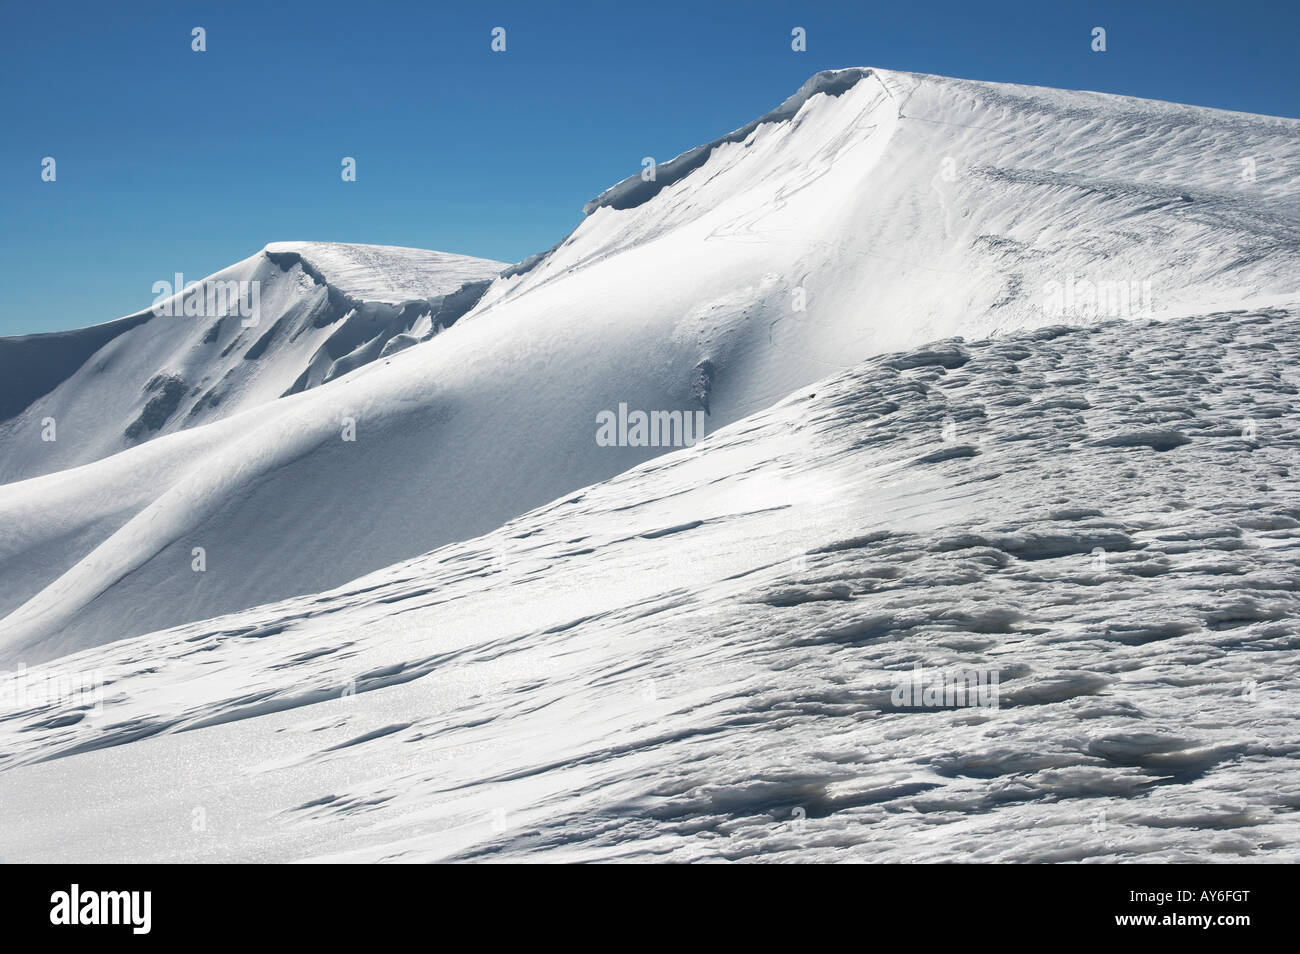 Montañas invernales ridge con saliente de nieve y snowboard caps las pistas de fondo de cielo azul. Foto de stock